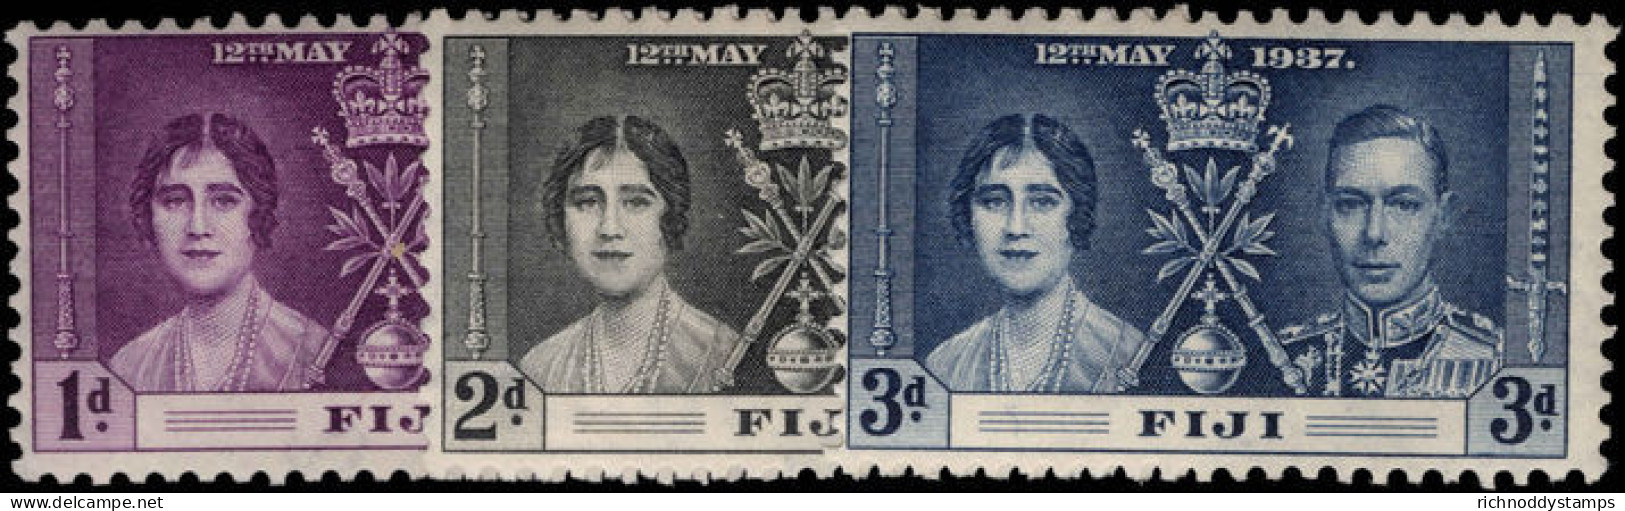 Fiji 1937 Coronation Set Lightly Mounted Mint. - Fidji (...-1970)